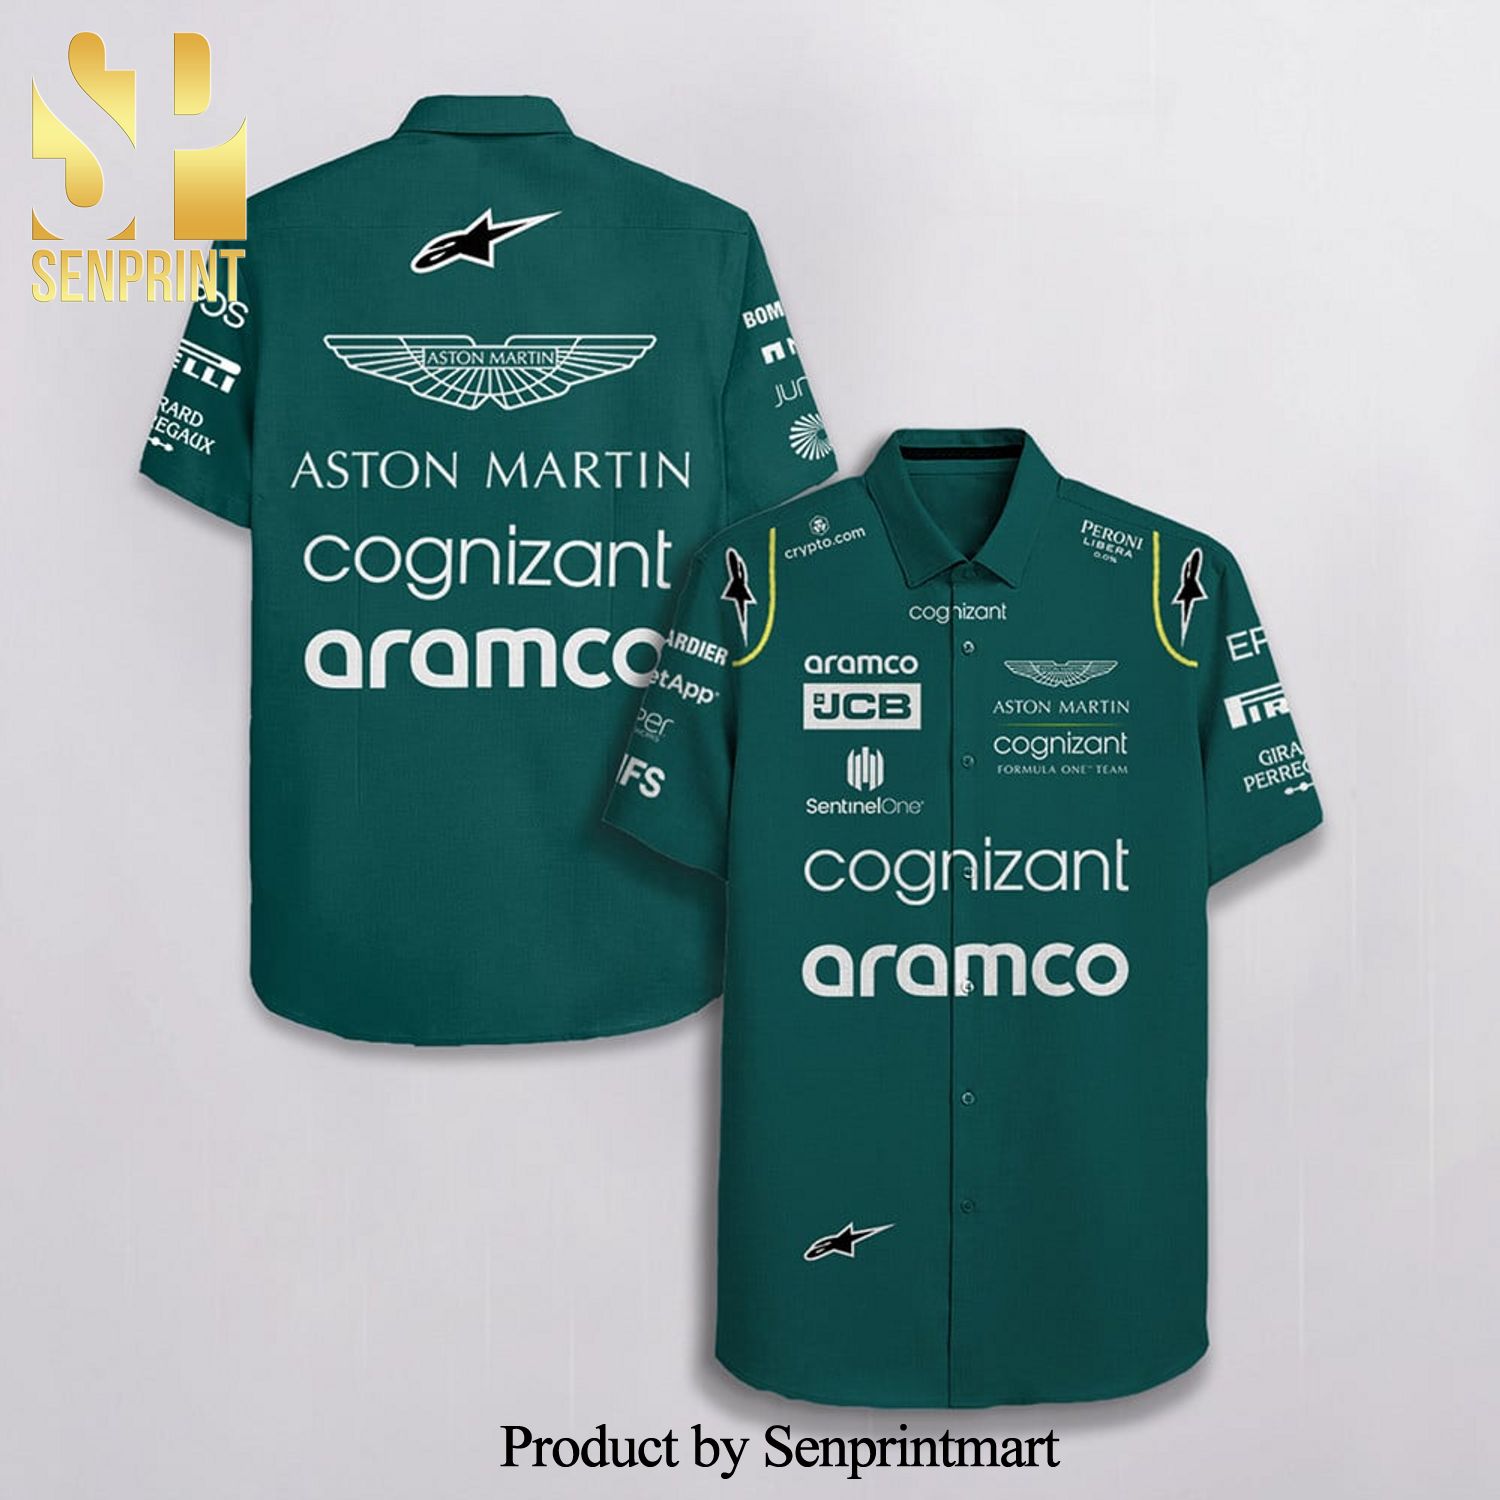 Aston Martin F1 Team Racing Cognizant Aramco Jcb Alpinestars Full Printing Hawaiian Shirt